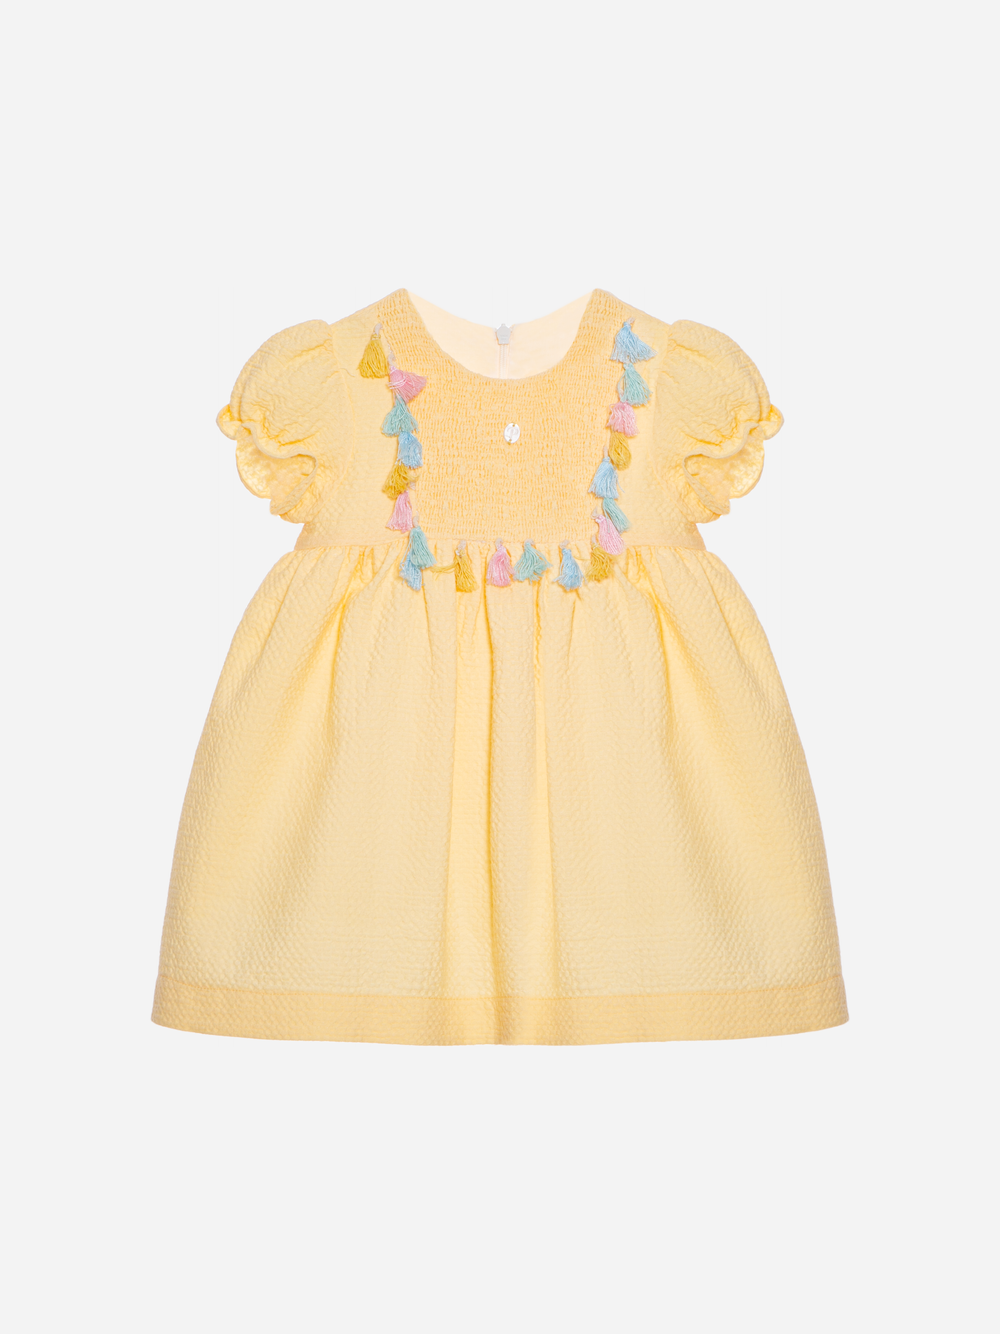 Yellow dress made in piquet